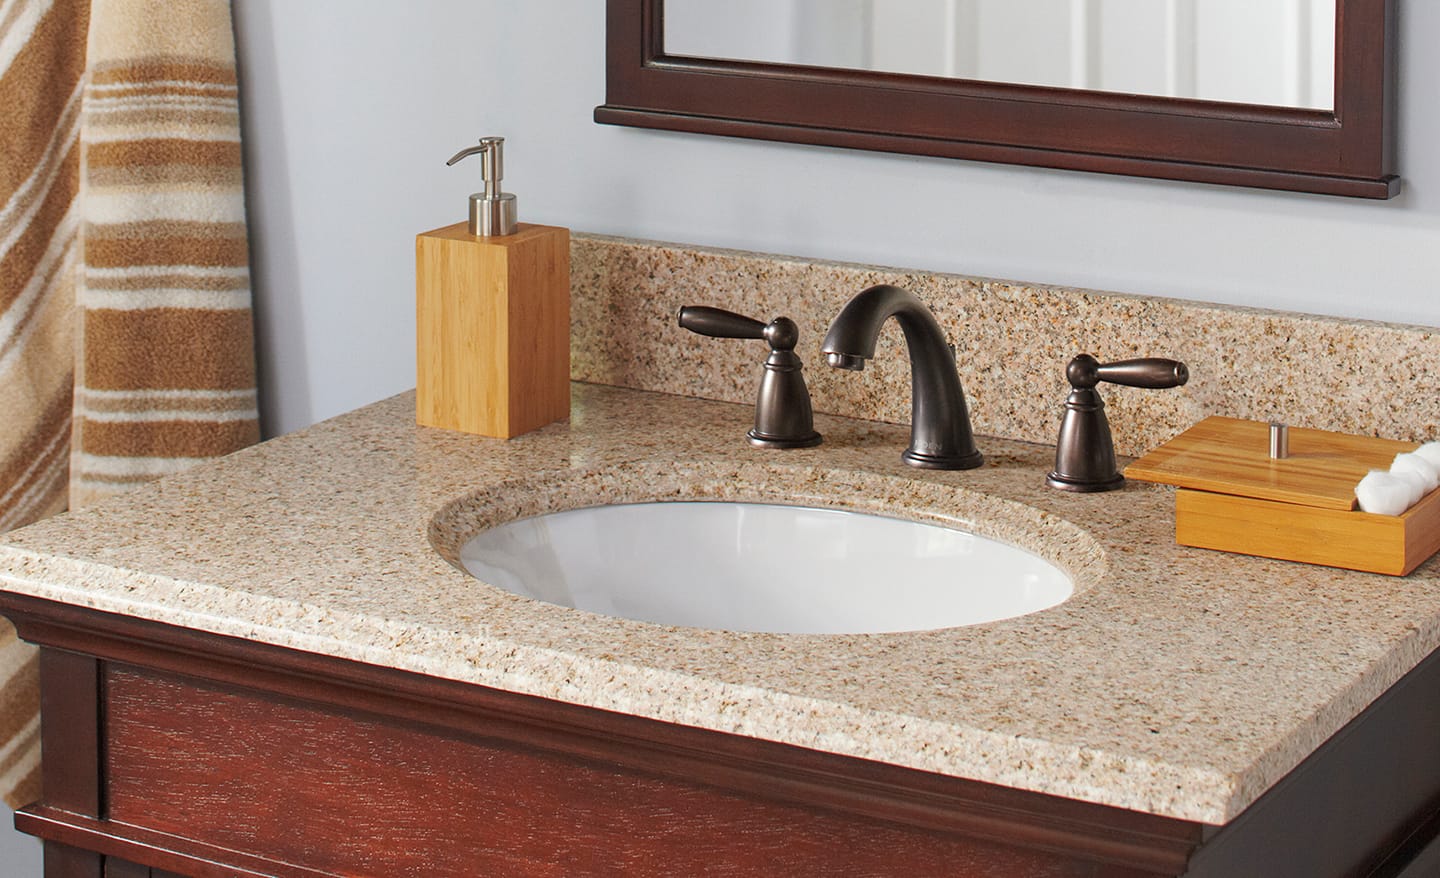 Granite bathroom vanity countertop with sink